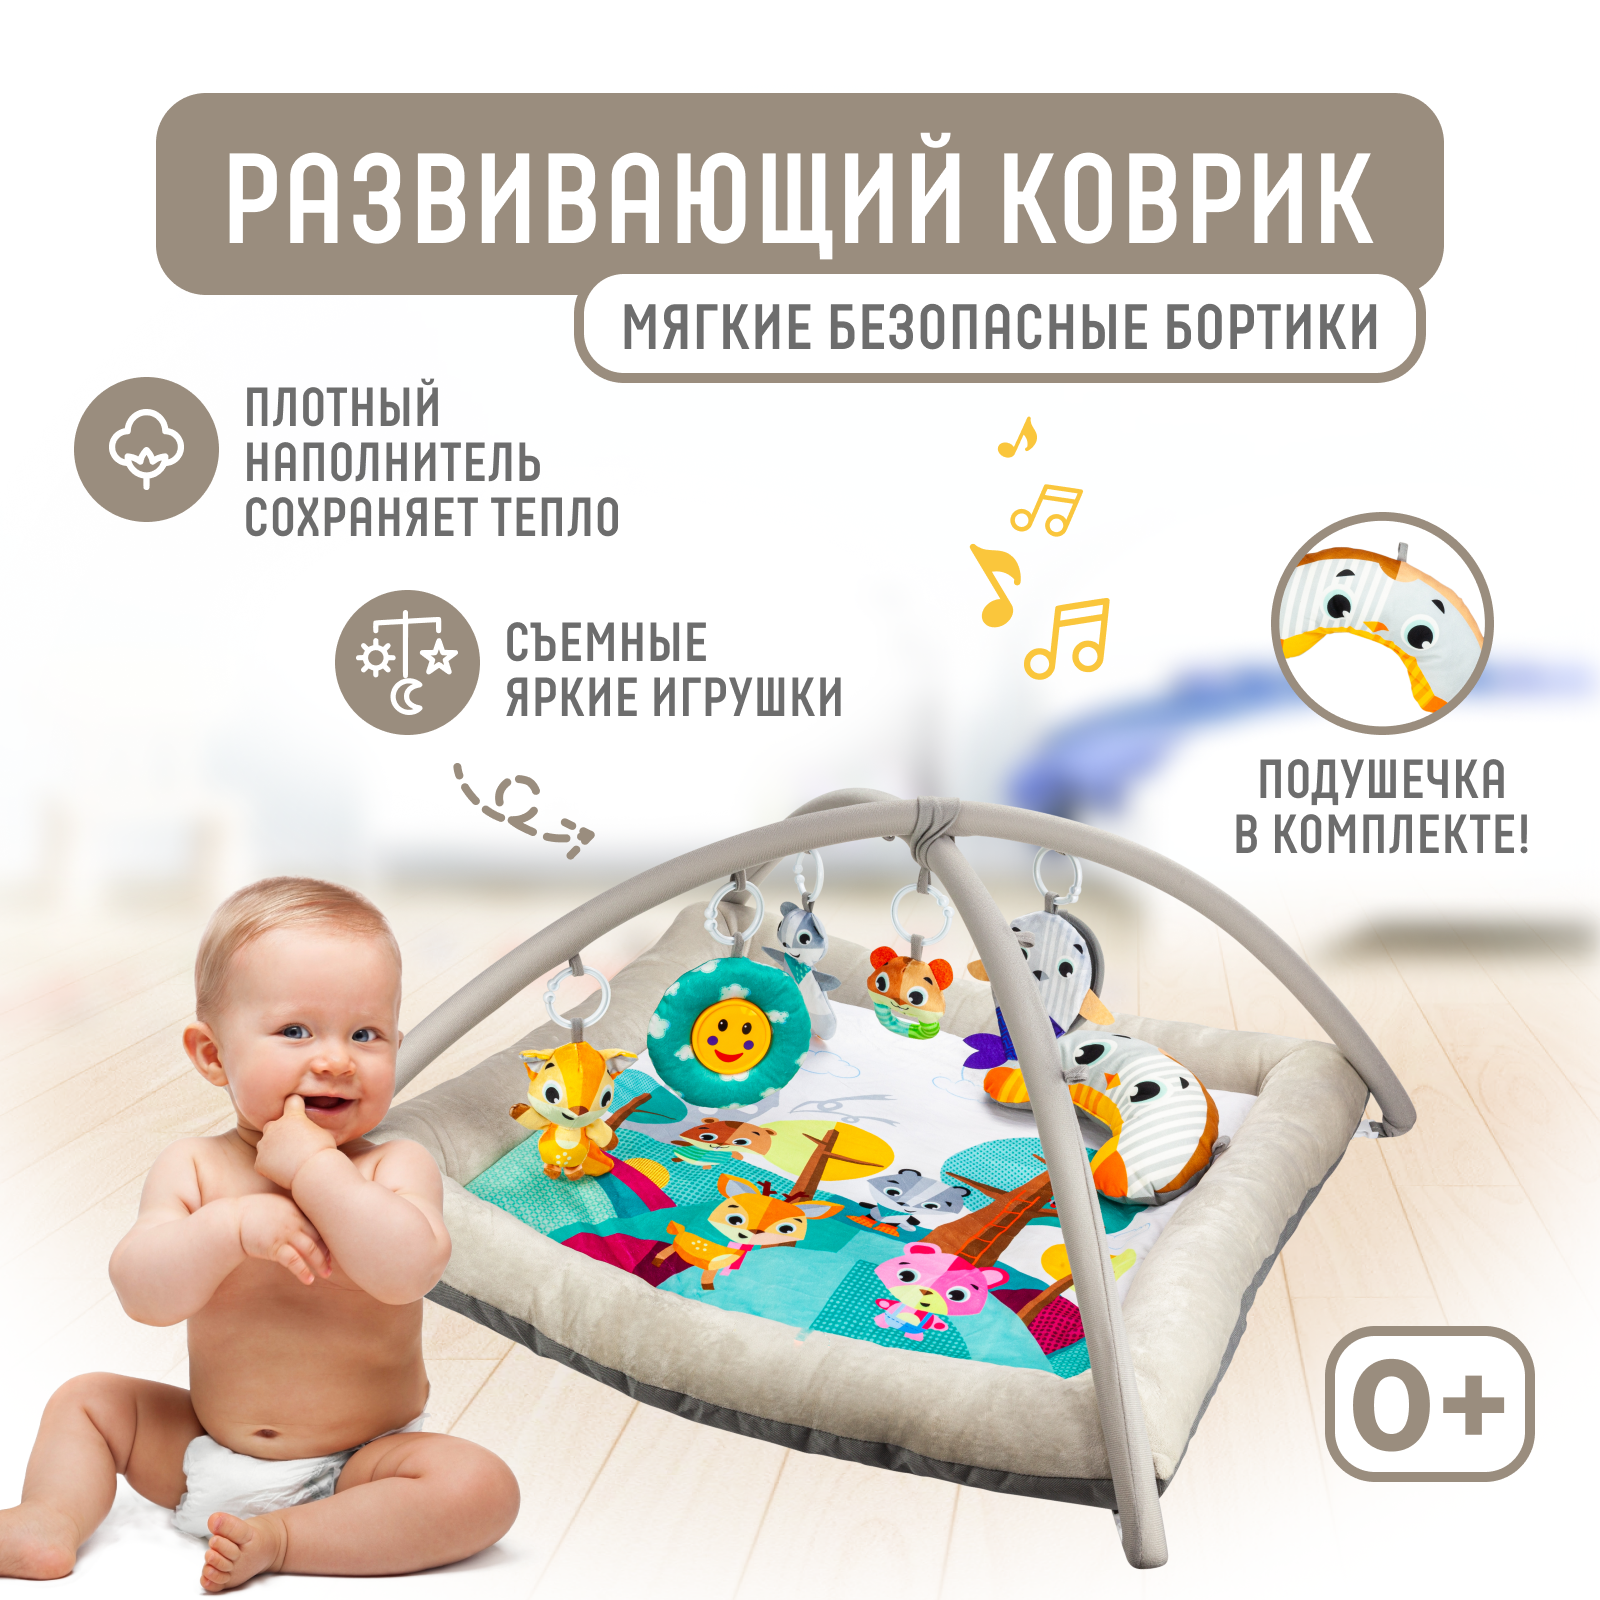 Развивающий игровой коврик Solmax для новорожденных с дугой и игрушками, бежевый/голубой развивающий коврик bertoni lorelli игровой маленький домик